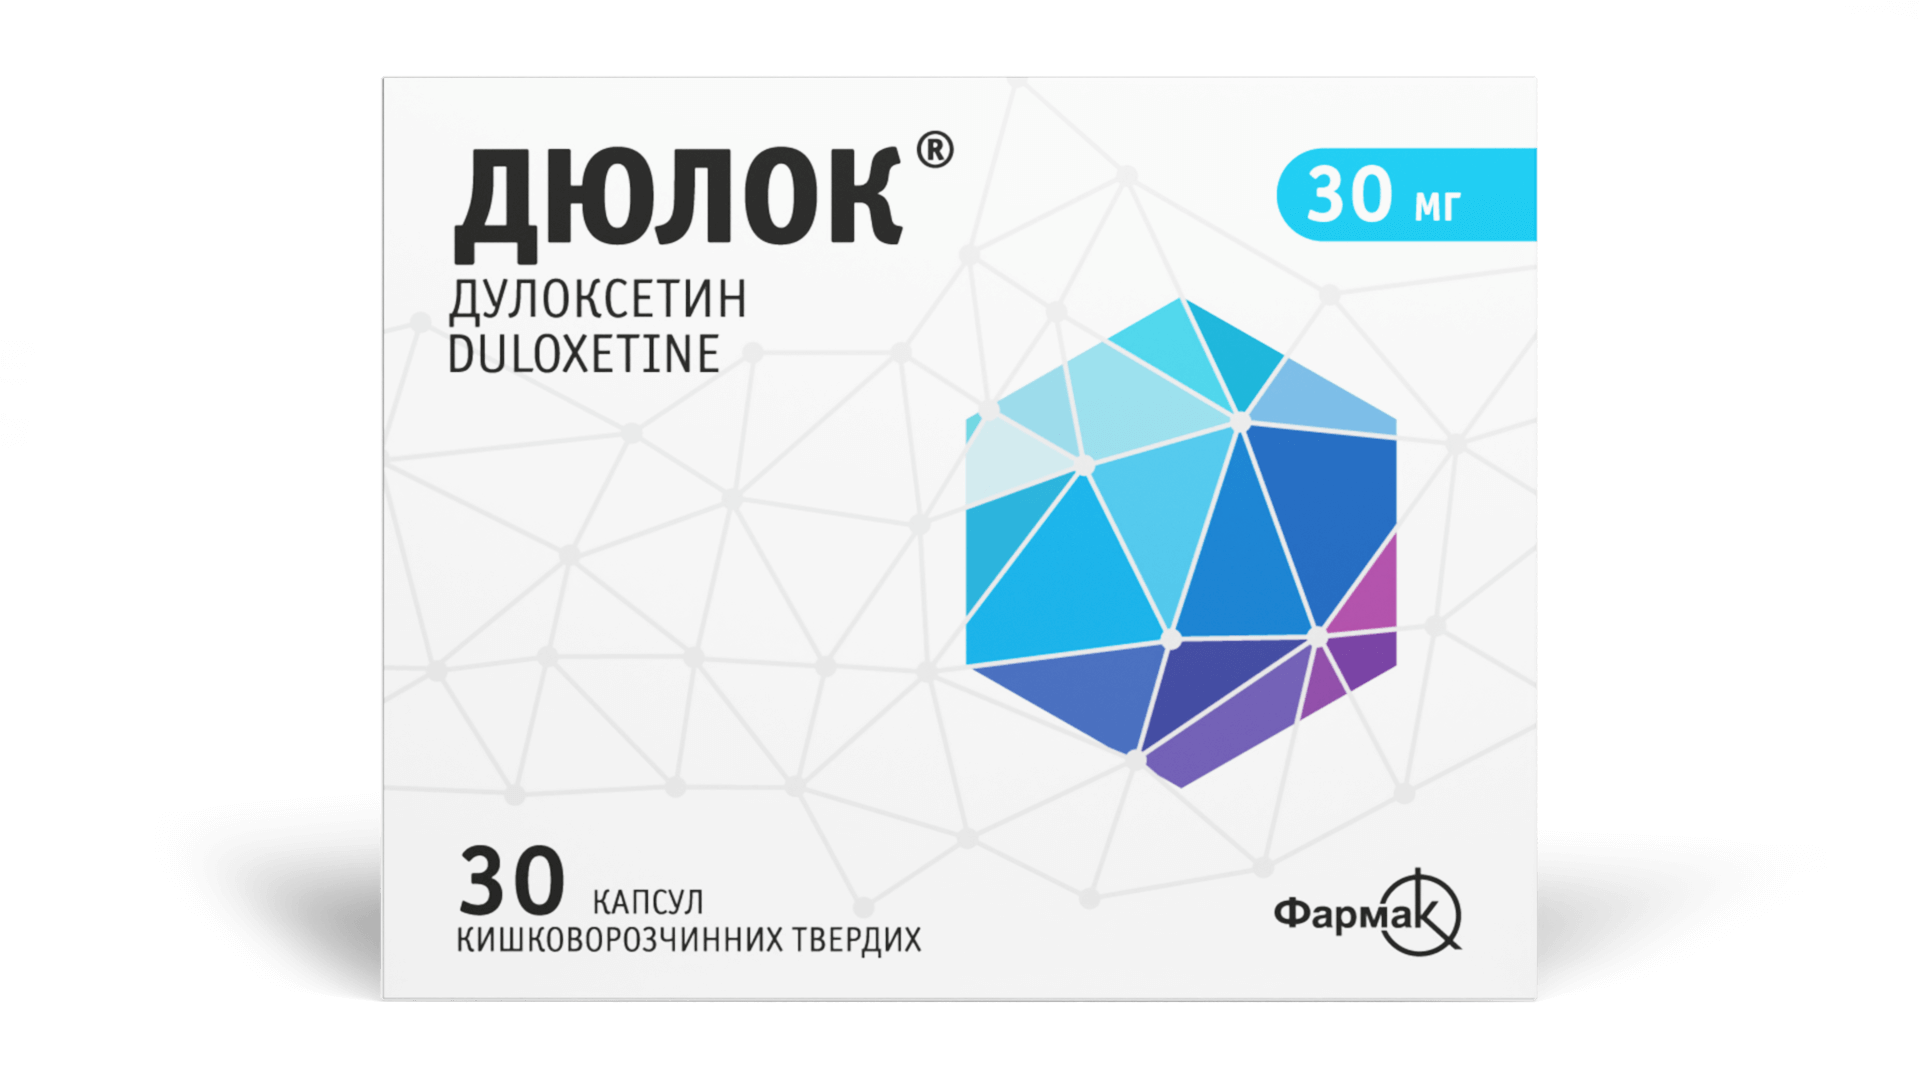 Дюлок® 30 мг (2)